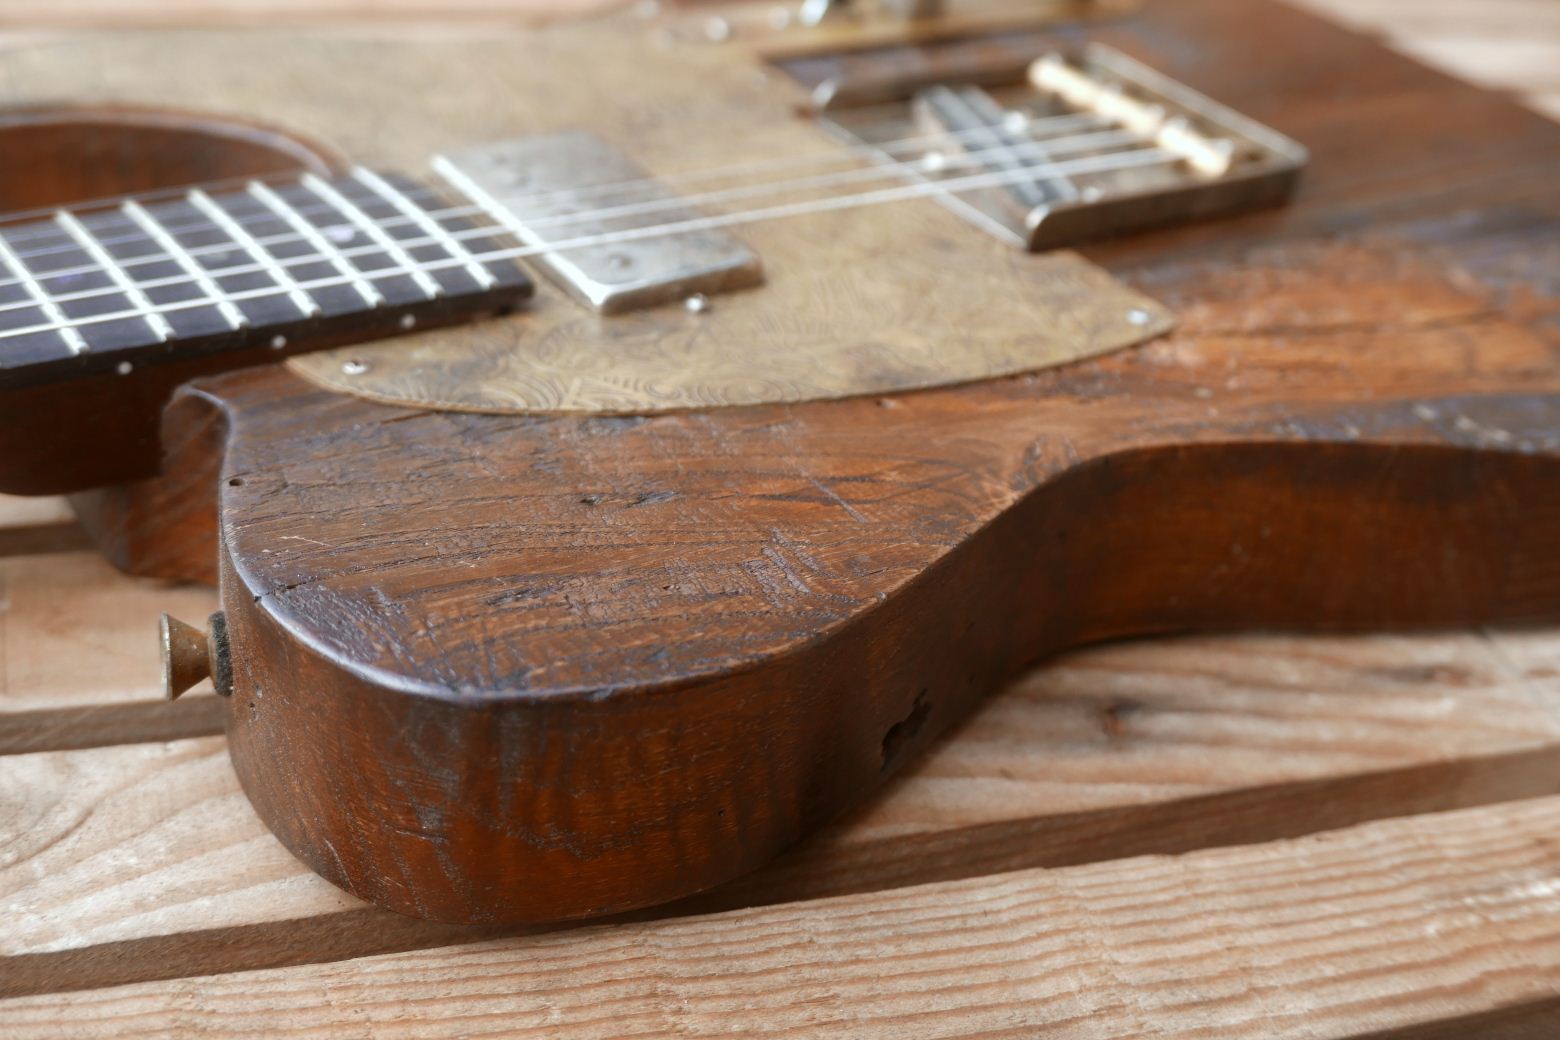 chitarra telecaster dettaglio castagno